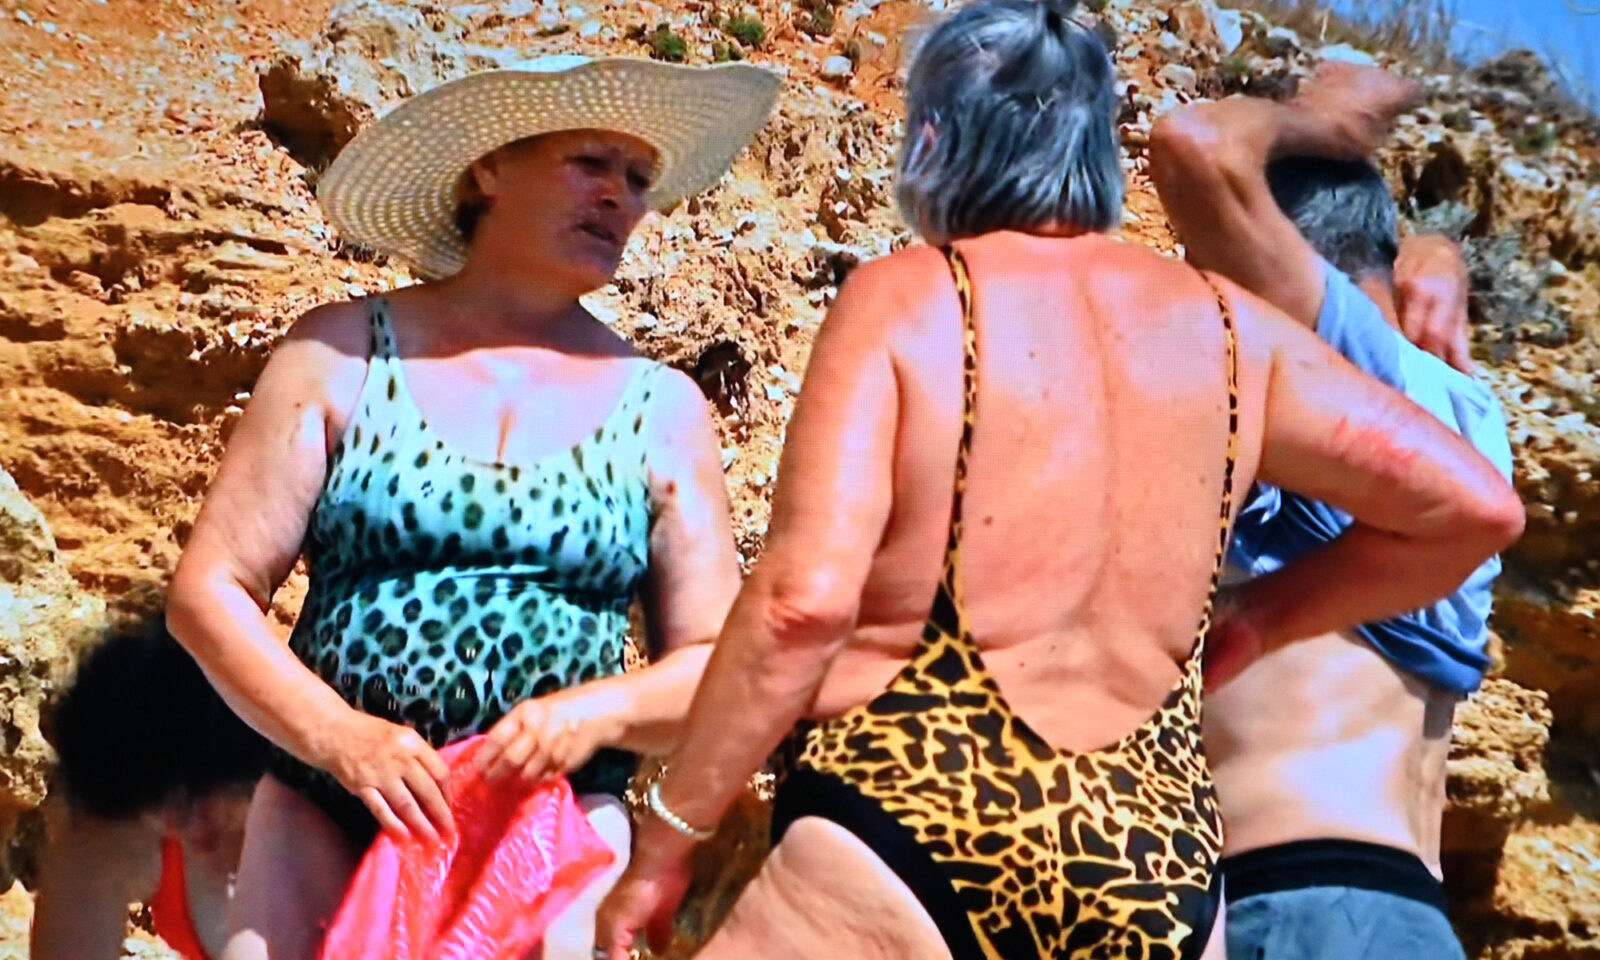 tjepan Runtek i njegove djevojke u zabavnoj sceni na plaži iz najnovije epizode RTL-ovog zbiljokaza. Smijeh, komplimenti i različita mišljenja o kupaćim kostimima obogaćuju ovu neobičnu situaciju. Stjepan ostaje galantan i smiren unatoč komentarima o svojoj figuri.